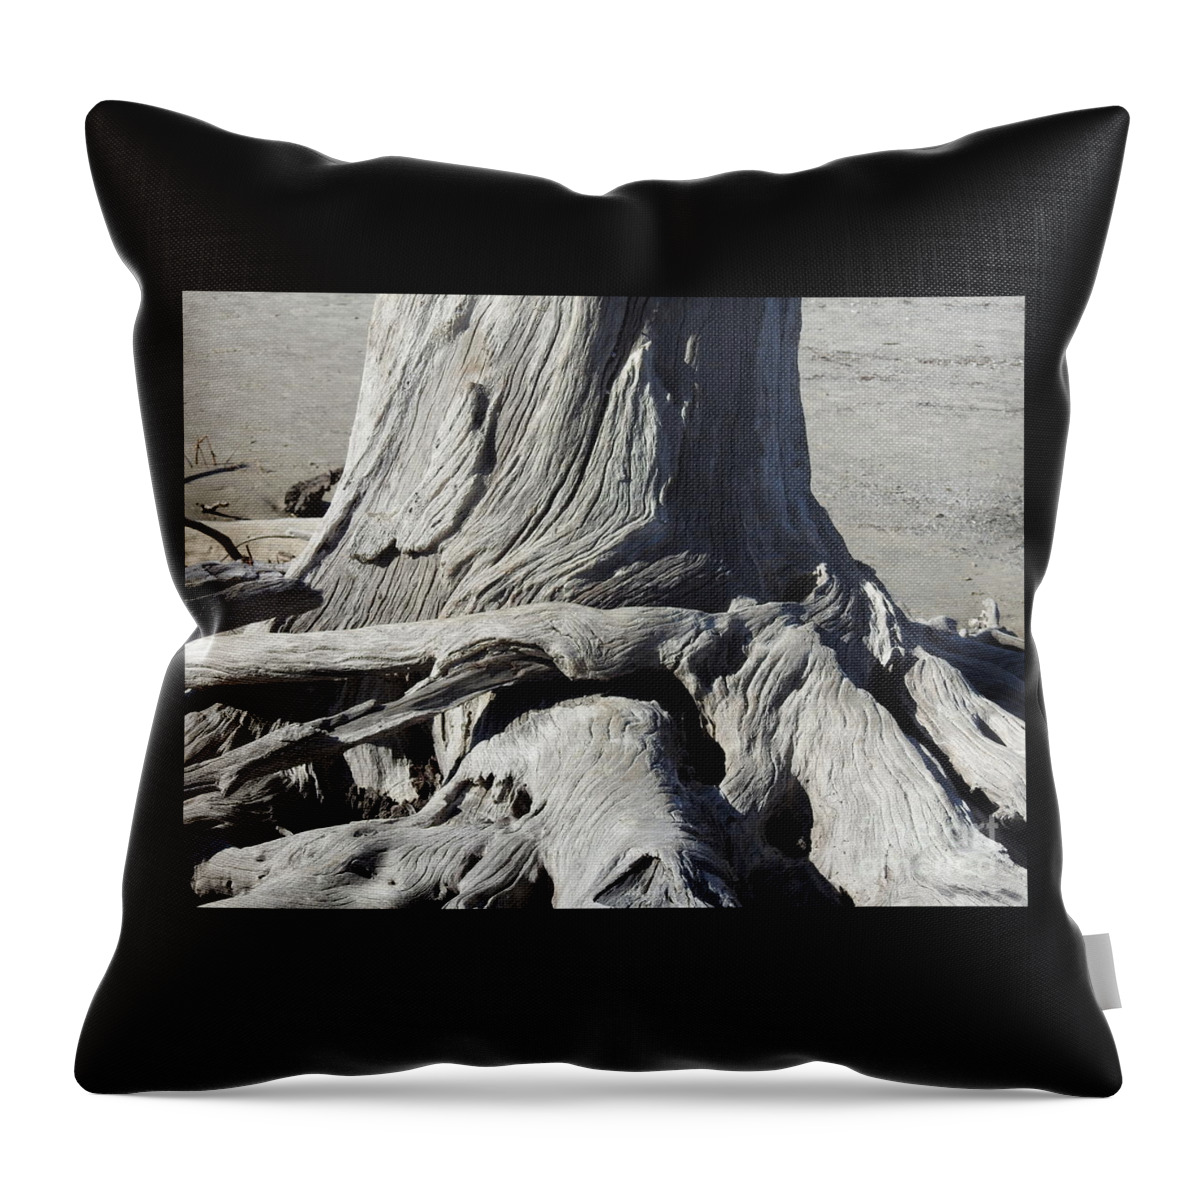 Driftwood Throw Pillow featuring the photograph Driftwood Naturals by Jan Gelders